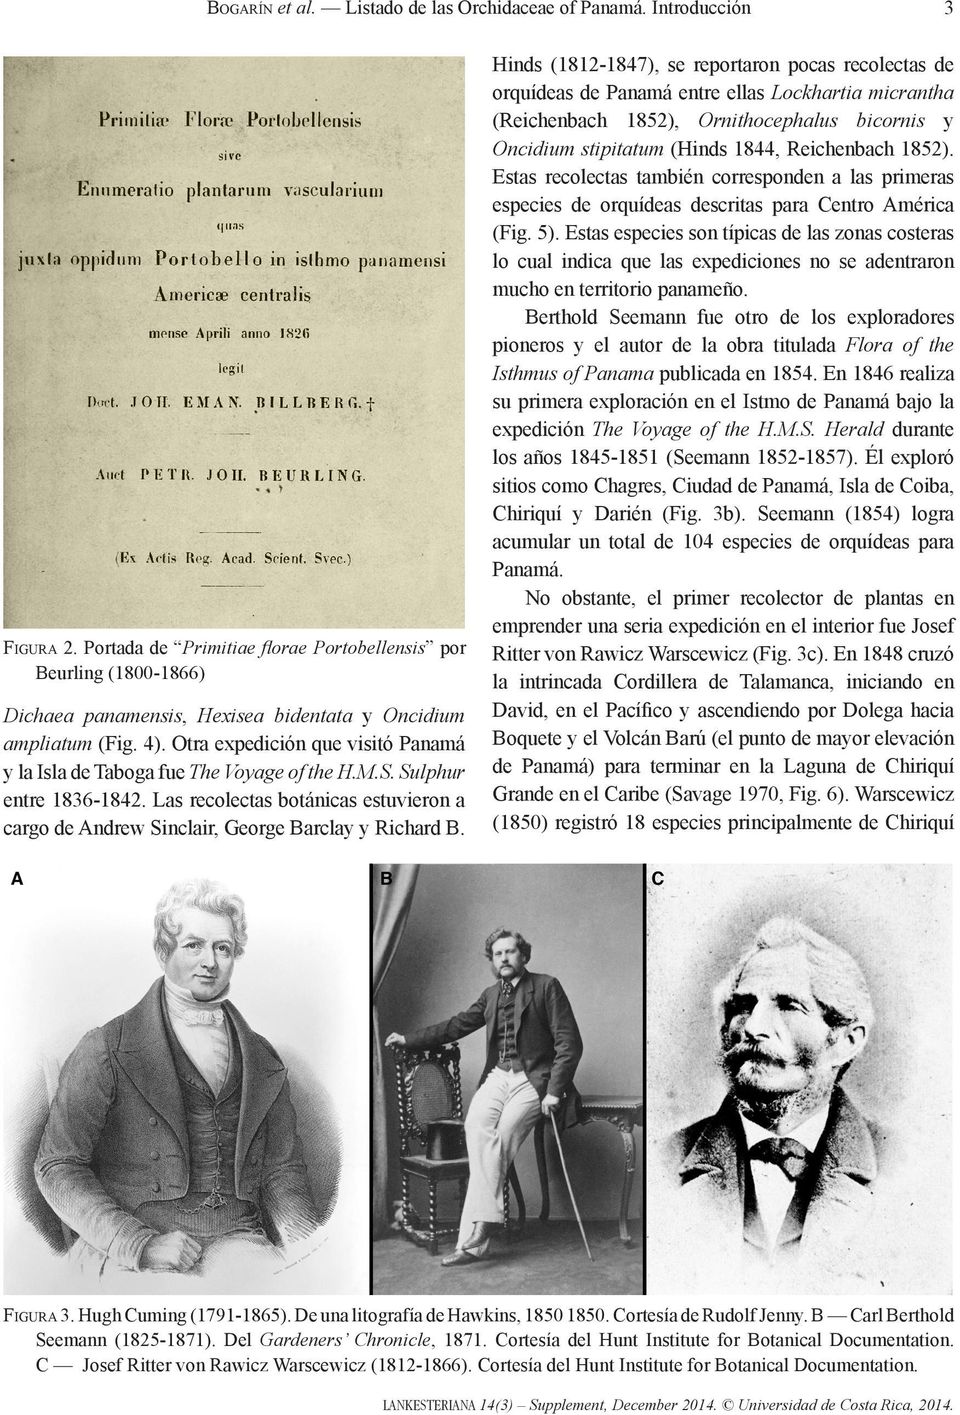 Otra expedición que visitó Panamá y la Isla de Taboga fue The Voyage of the H.M.S. Sulphur entre 1836-1842. Las recolectas botánicas estuvieron a cargo de Andrew Sinclair, George Barclay y Richard B.